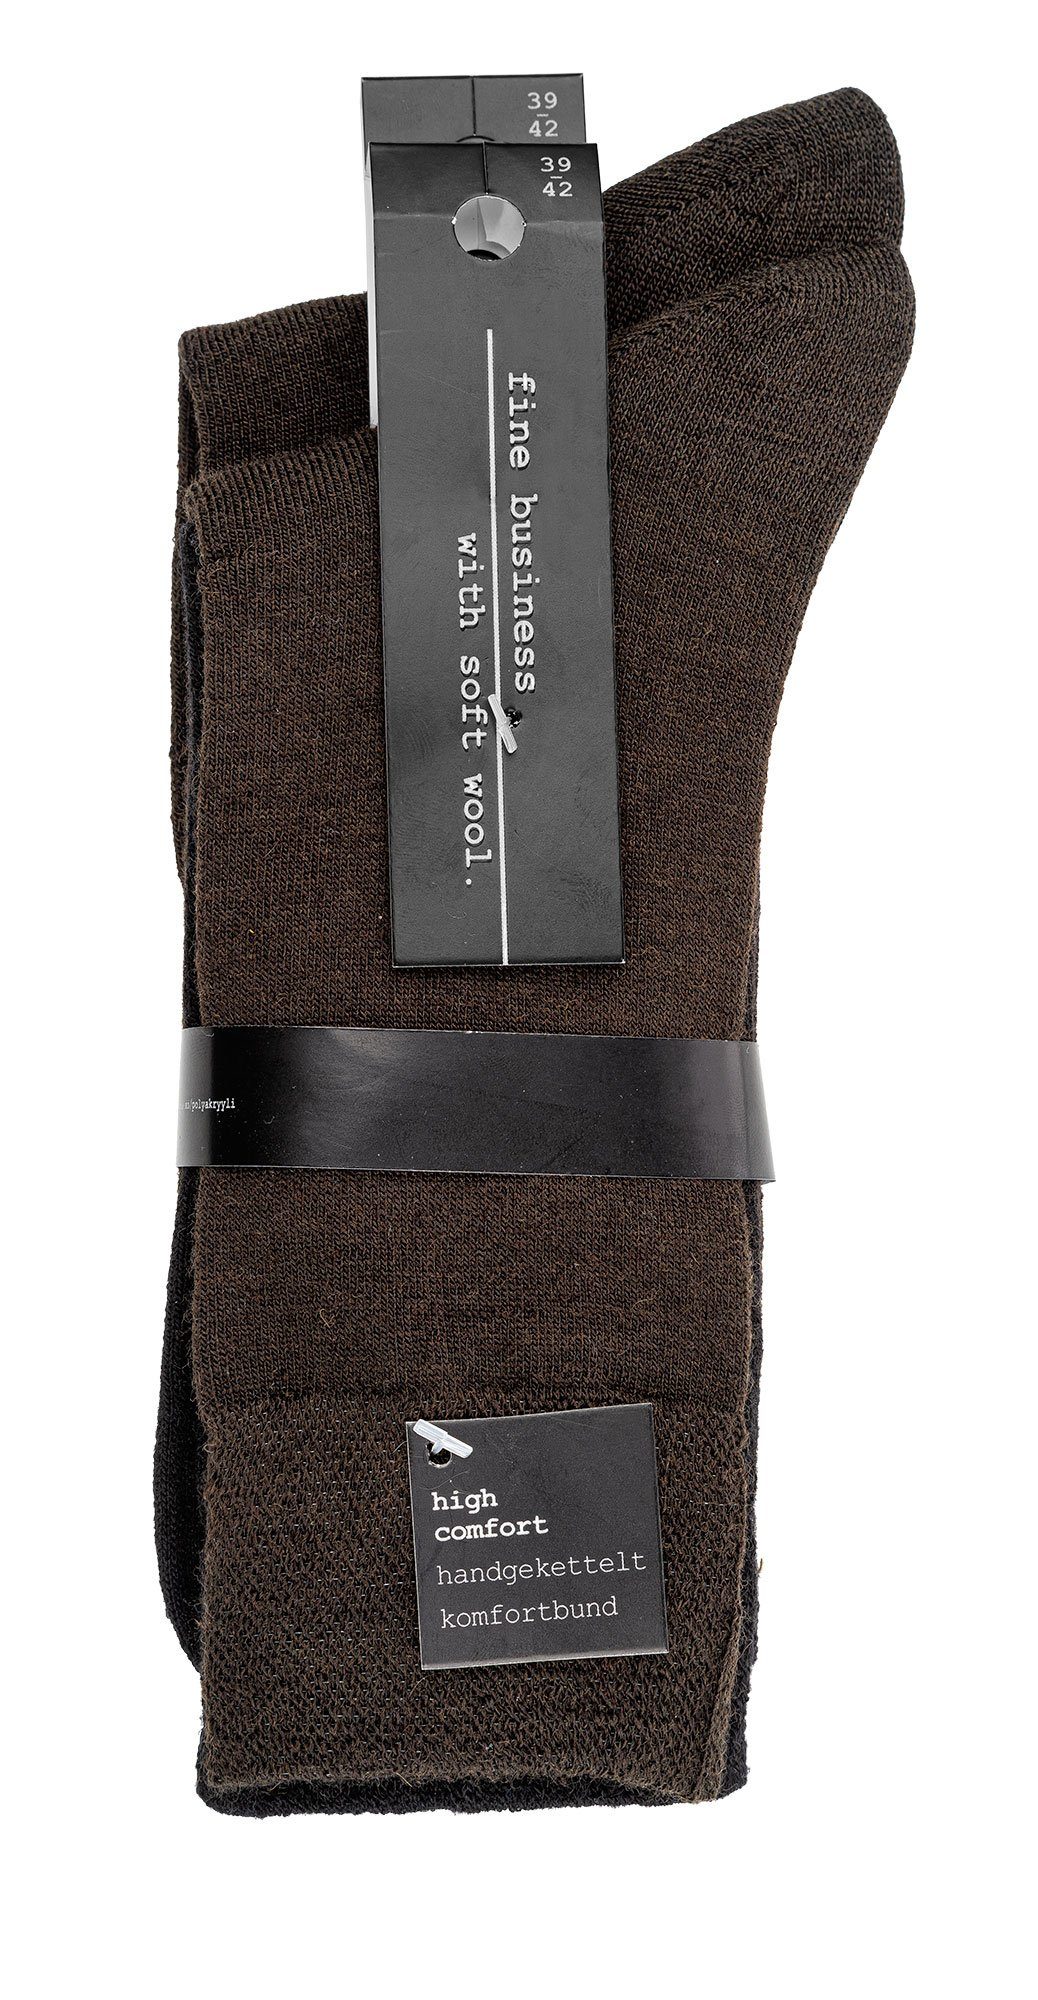 TippTexx Dunkelbraun Businesssocken 2 Paar Business-Komfort-Socken mit 24 handgekettelt, Piqué-Bund Wolle,